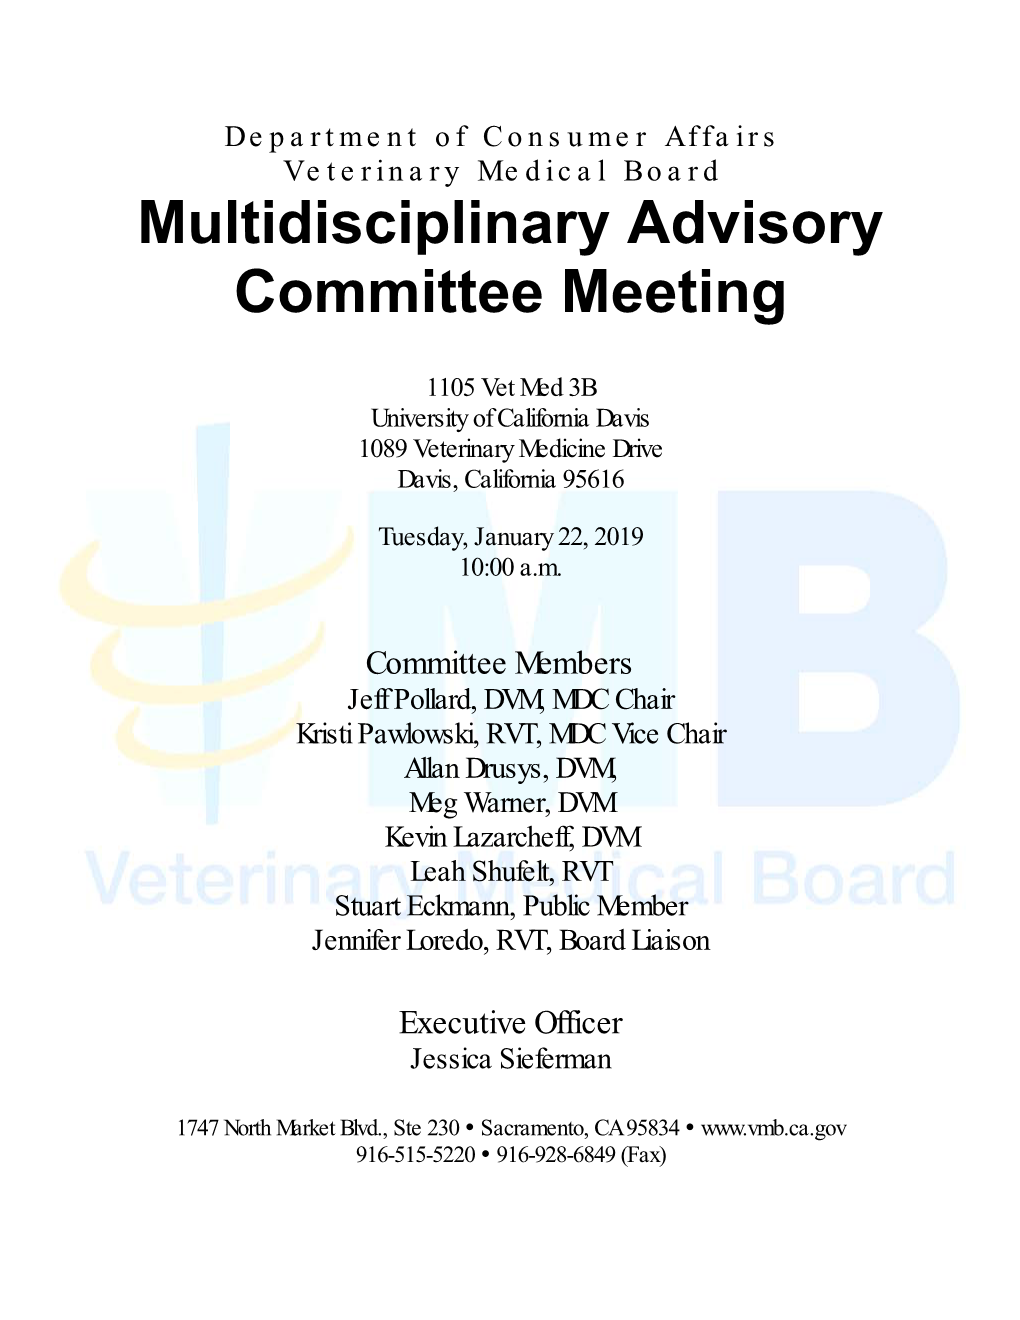 Multidisciplinary Advisory Committee Meeting